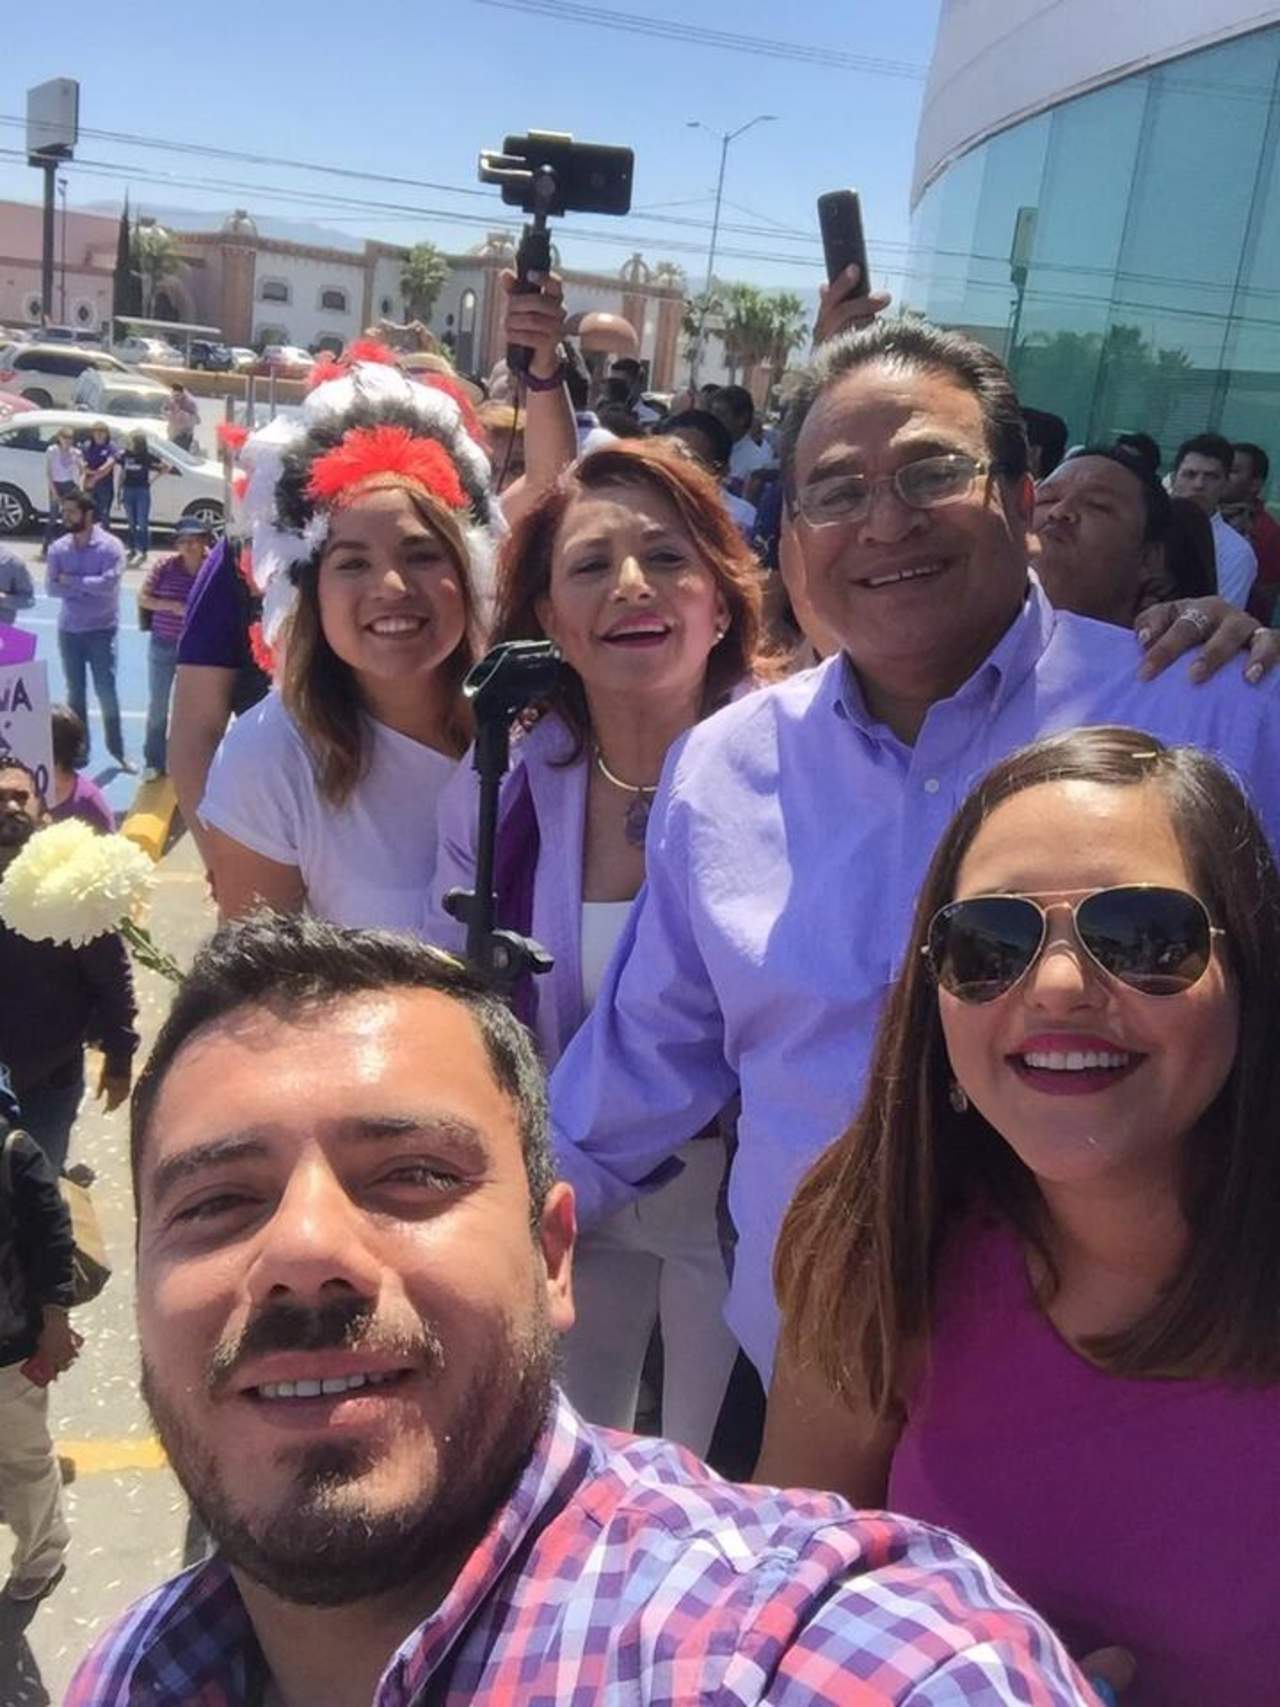 El lagunero Javier Guerrero arribó al Instituto Electoral de Coahuila junto con cientos de simpatizantes para registrarse como candidato independiente a la gubernatura de Coahuila. (TWITTER)

